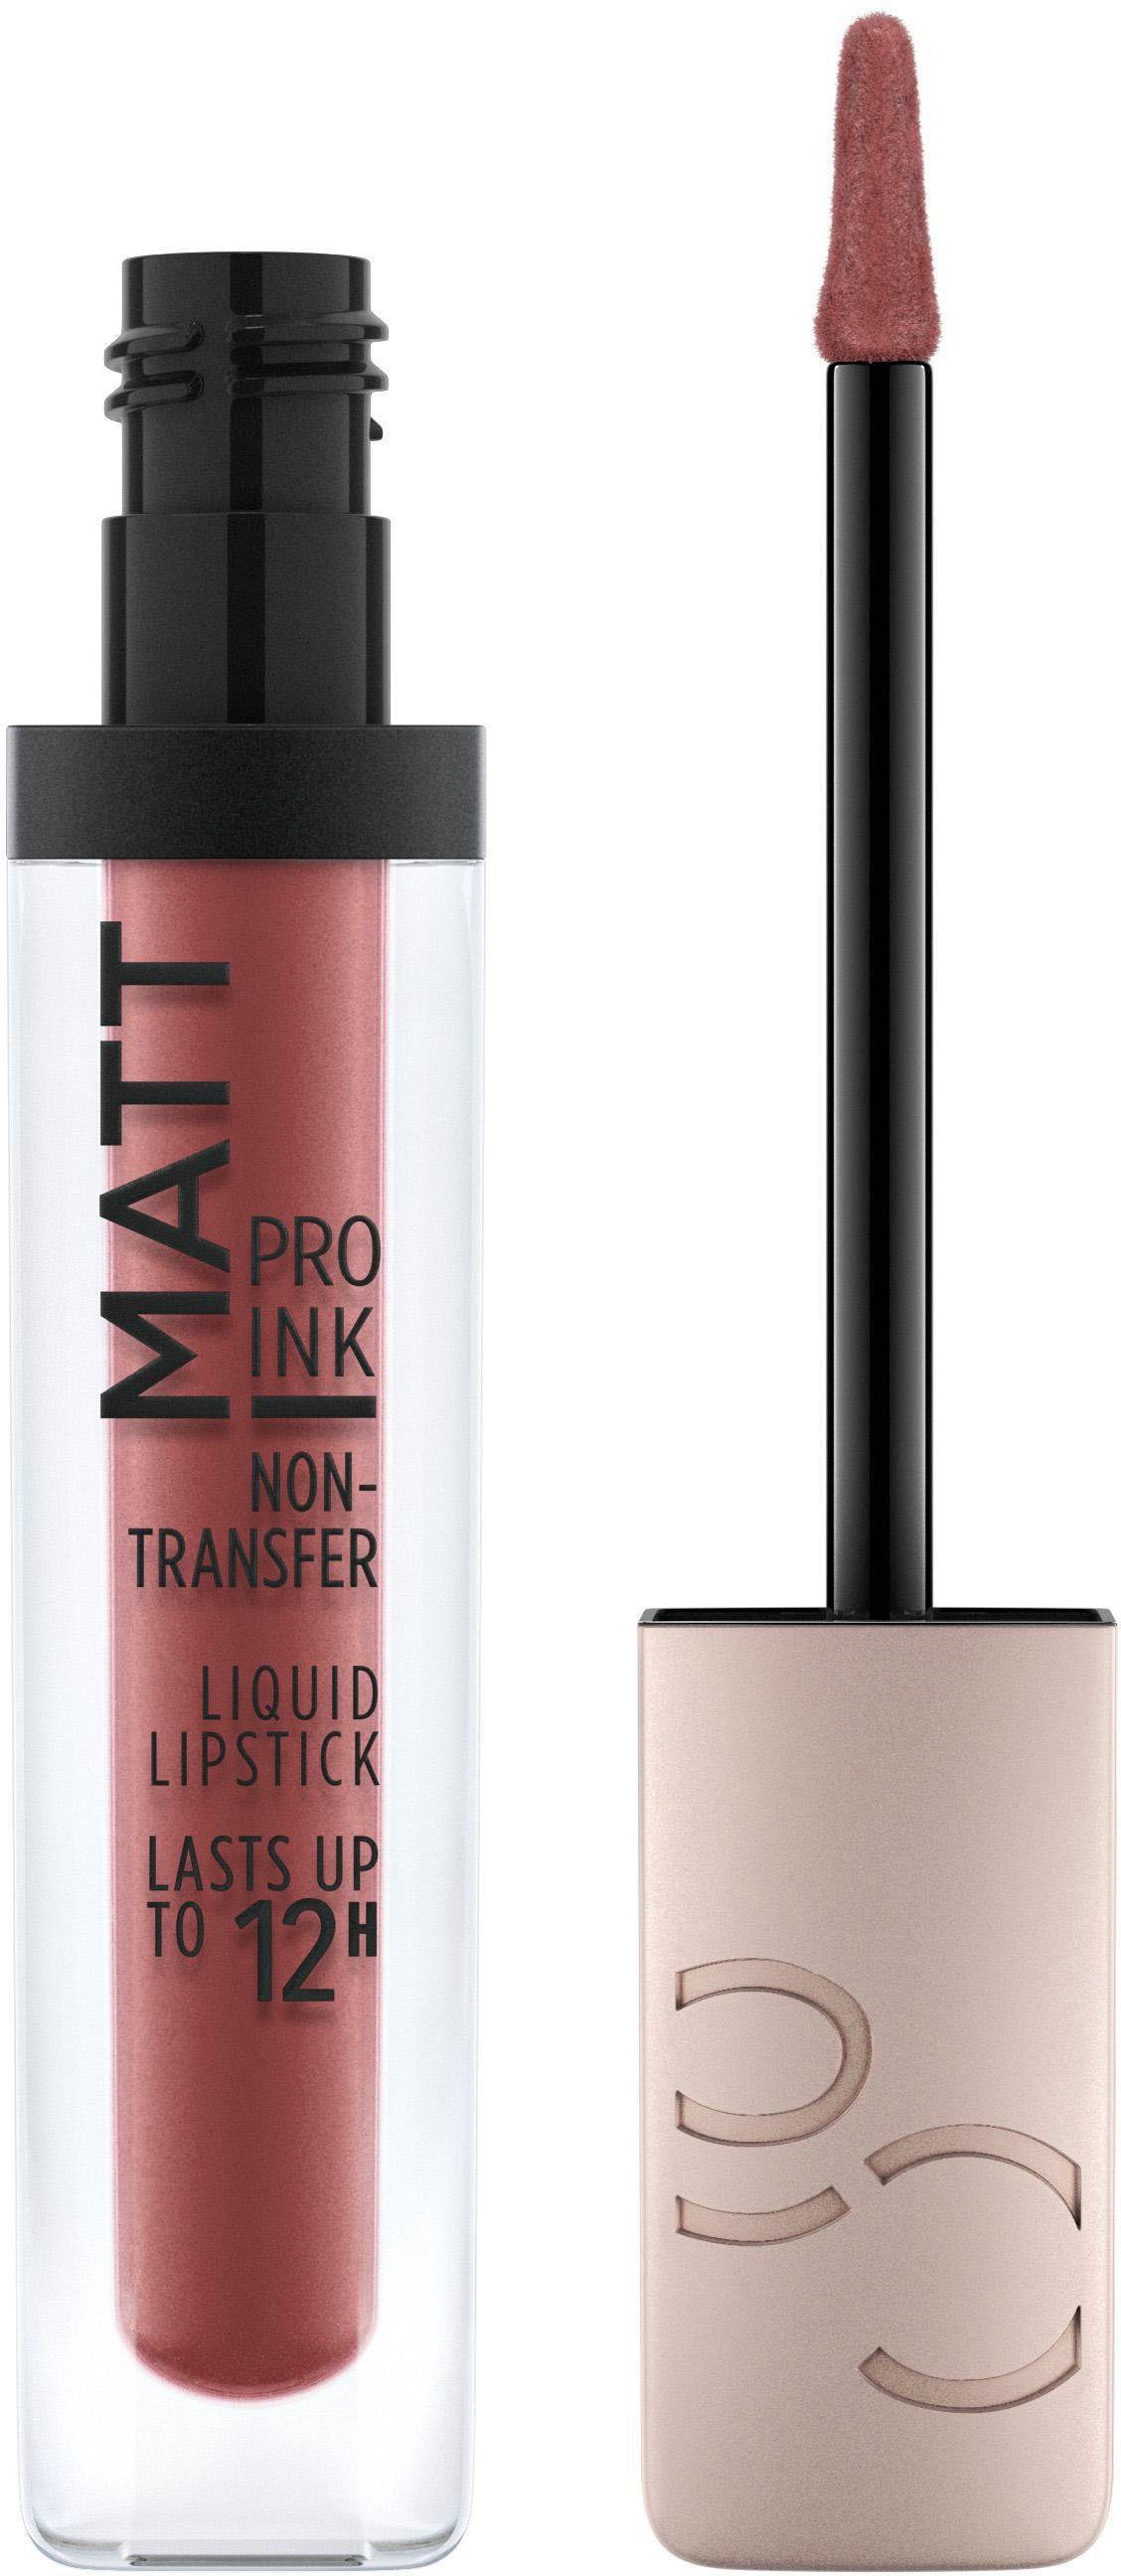 Haushalt Make Up Catrice Lippenstift Matt Pro Ink Non-Transfer Liquid Lipstick, 3-tlg.